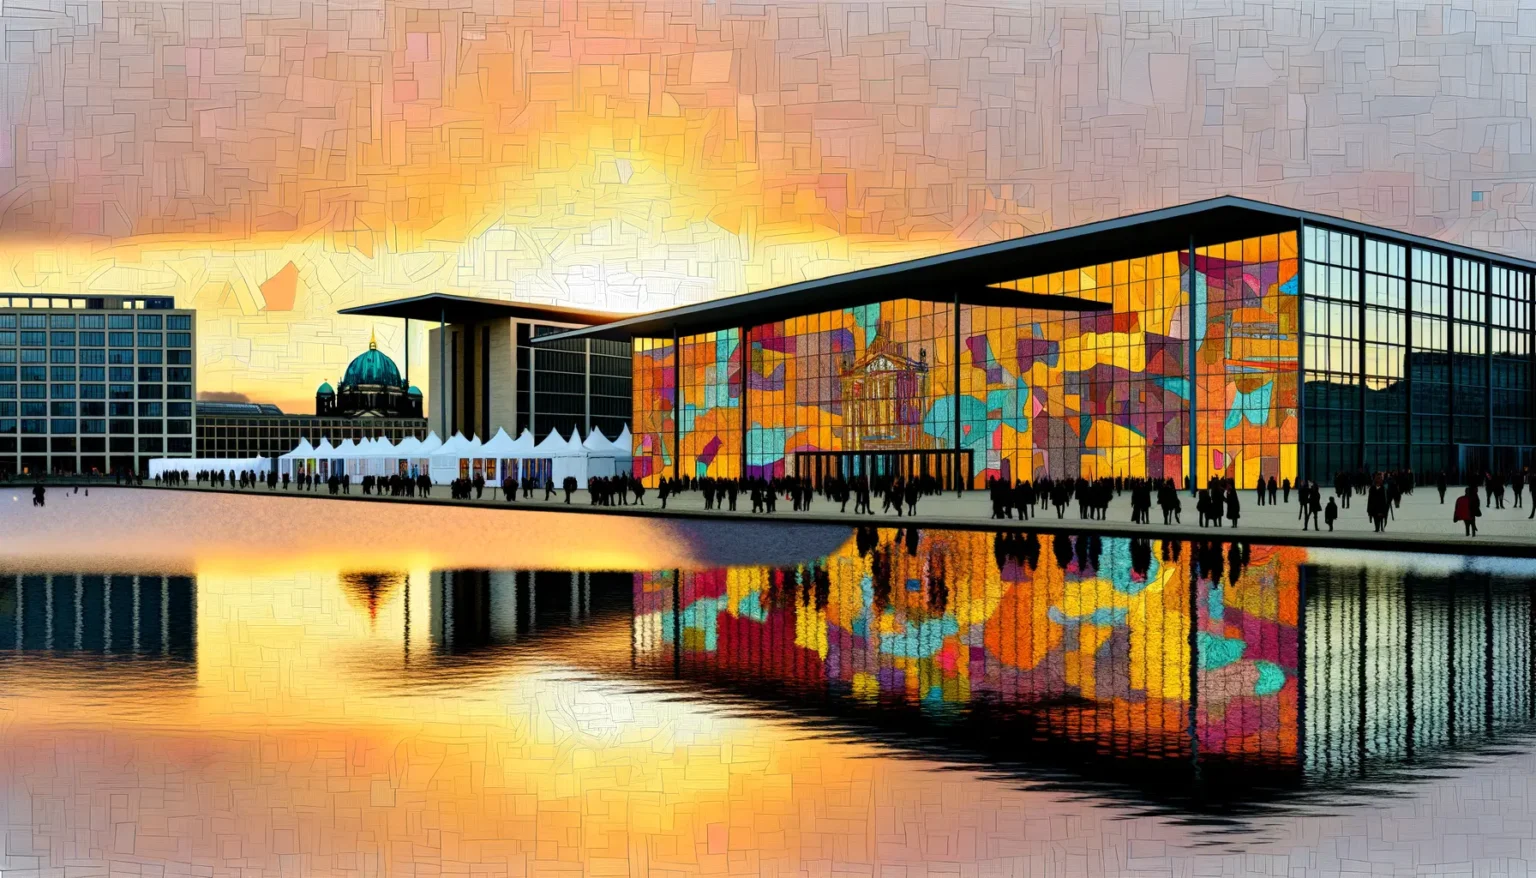 Moderne Architektur eines Gebäudes mit großer Glasfassade, die bunte, abstrakte Muster zeigt, reflektiert auf einer Wasserfläche vor dem Gebäude im Sonnenuntergang. Menschenmengen sind als Silhouetten zu erkennen, die sich vor Zelten und dem Gebäude versammeln. Im Hintergrund ist teilweise eine klassische Kuppelkonstruktion sichtbar.